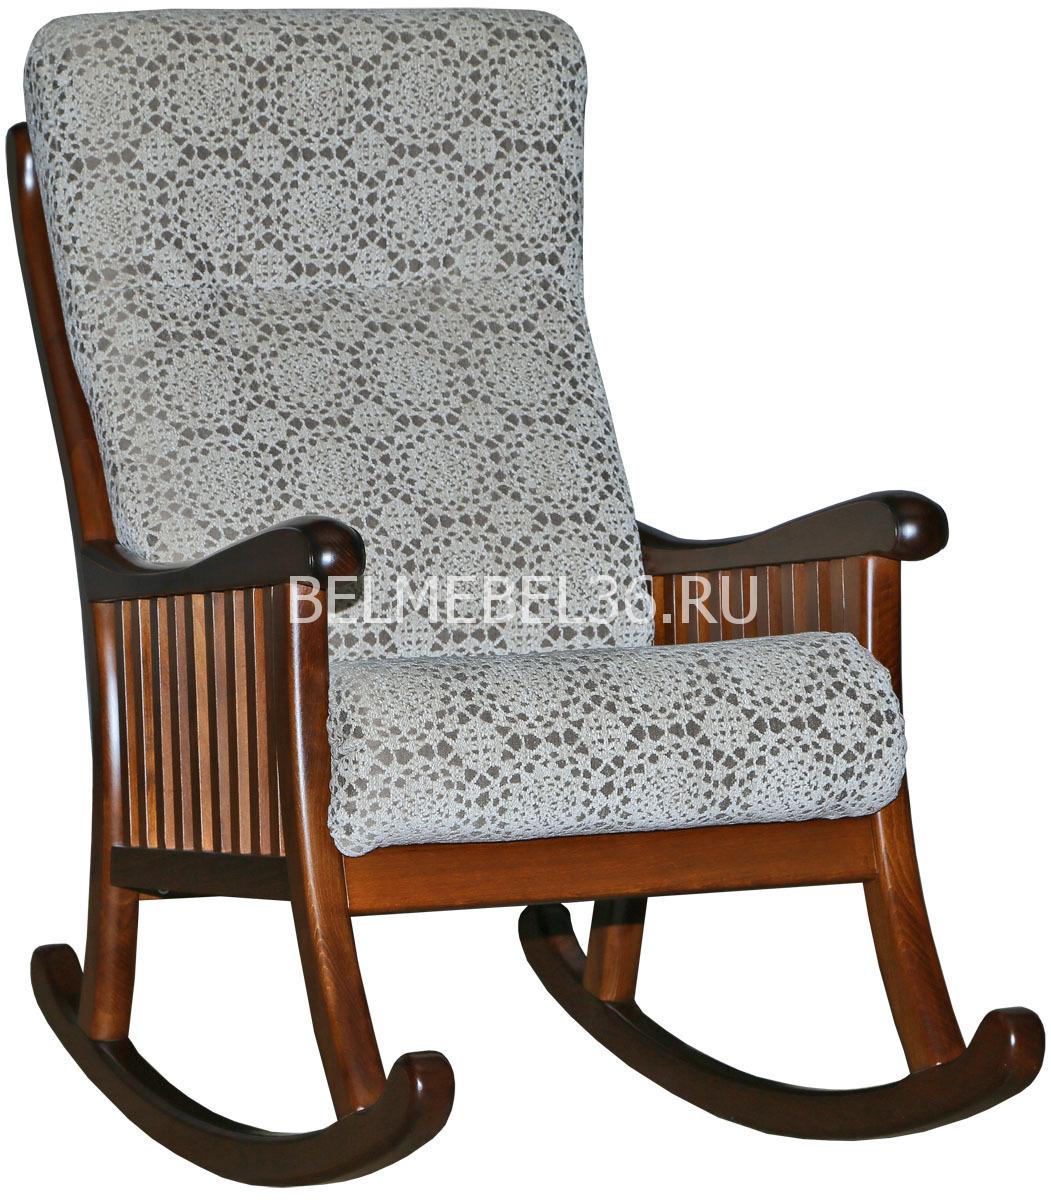 Кресло-качалка Панама (12) П-Д125 | Белорусская мебель в Воронеже